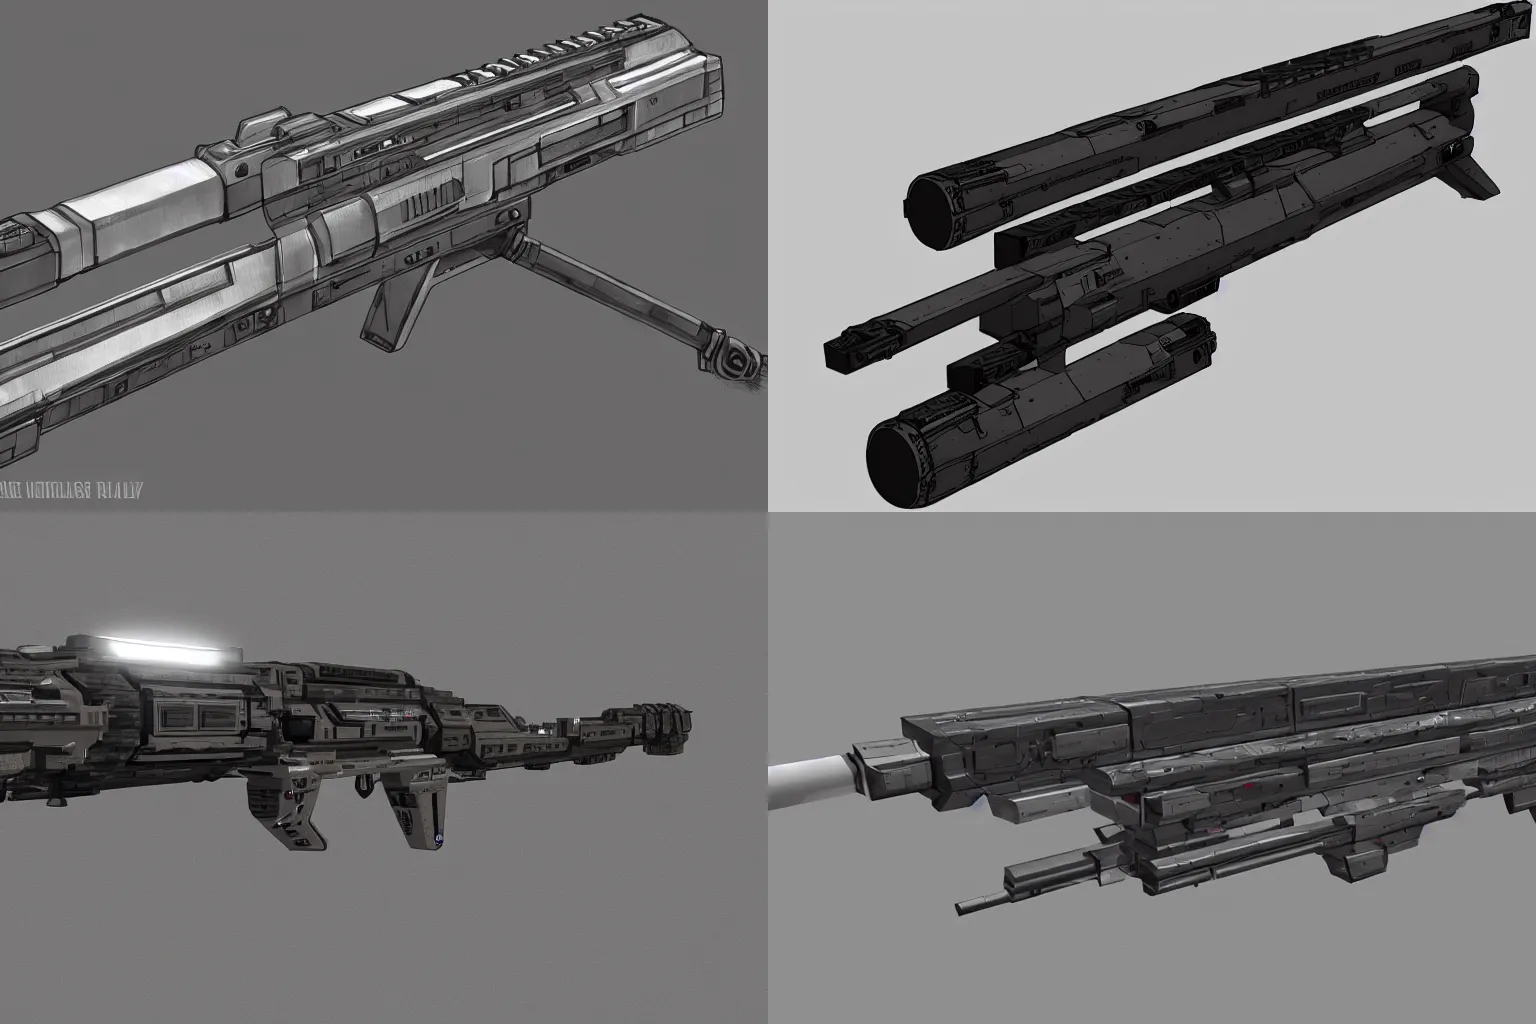 Prompt: a futuristic railgun rifle, concept art